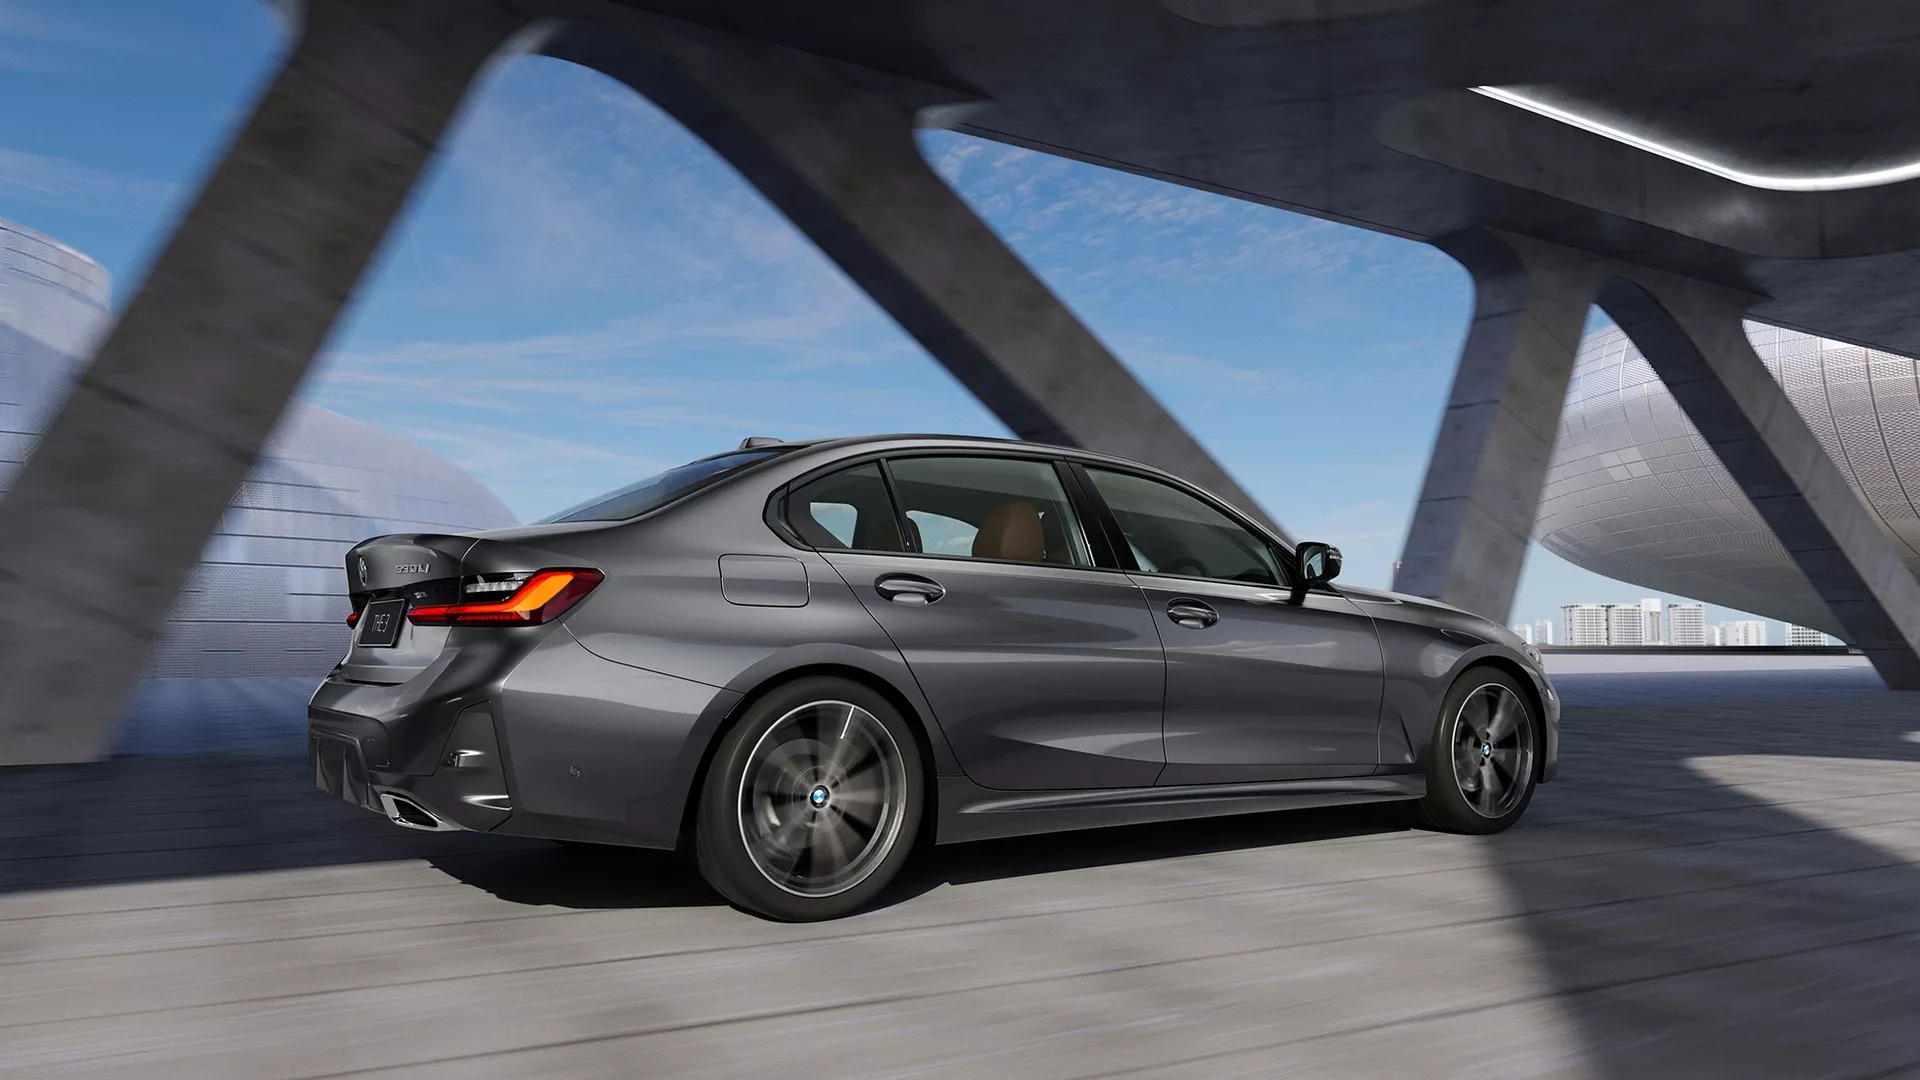 Ra mắt BMW 3-Series kéo dài: Nhìn mắt thường khó tìm ra sự khác biệt - Ảnh 7.